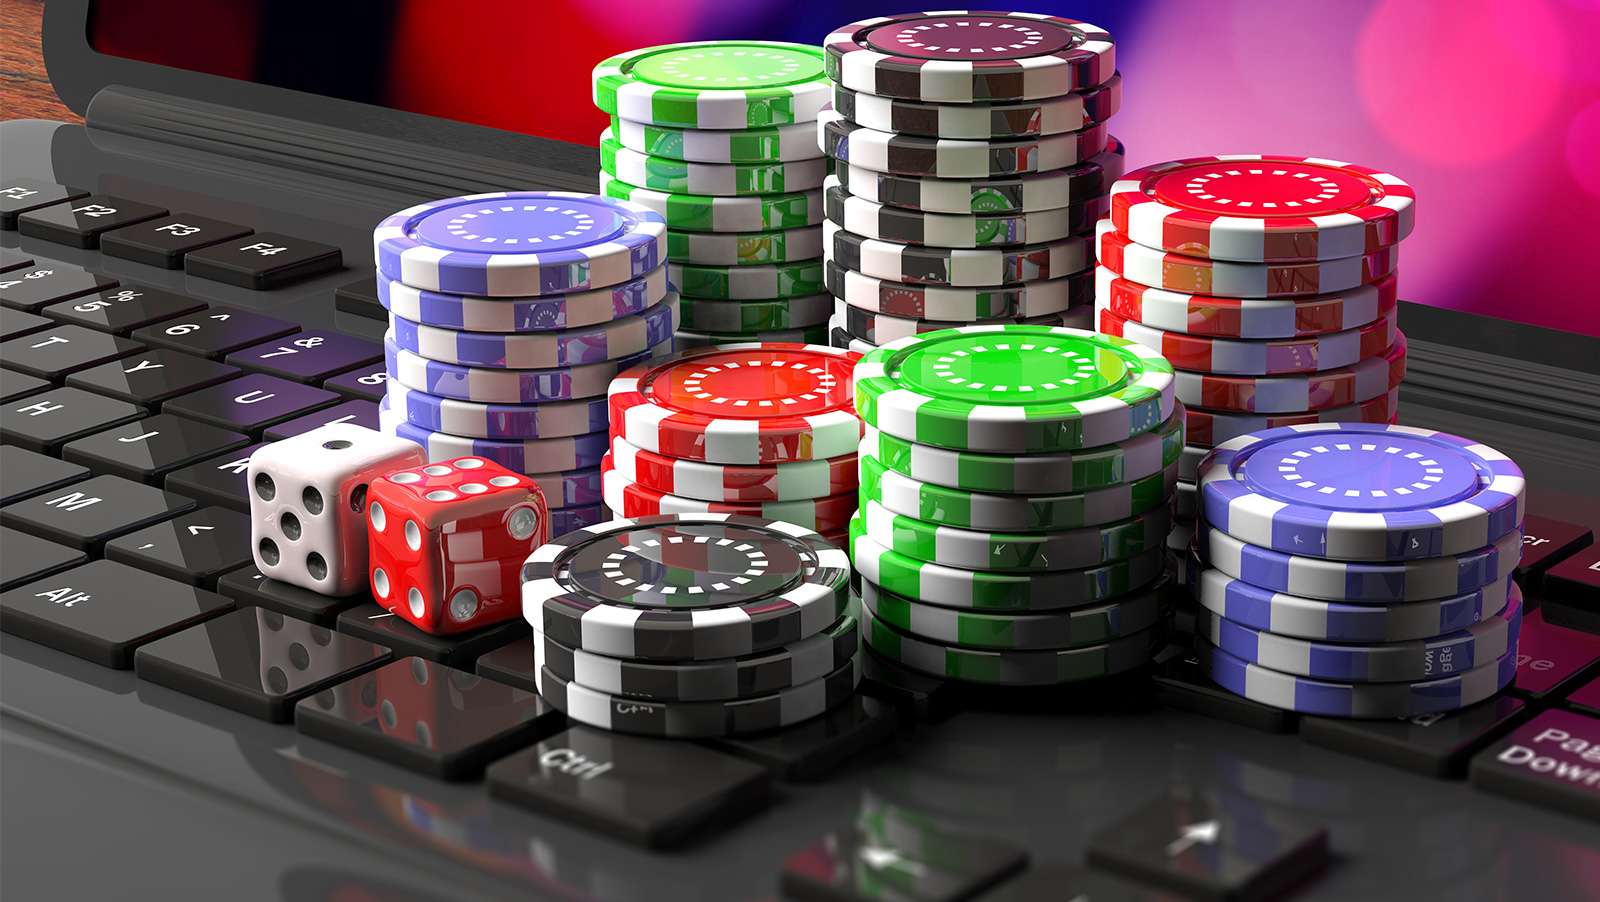 Este estudio perfeccionará su jugar al Poker: lea o se pierda